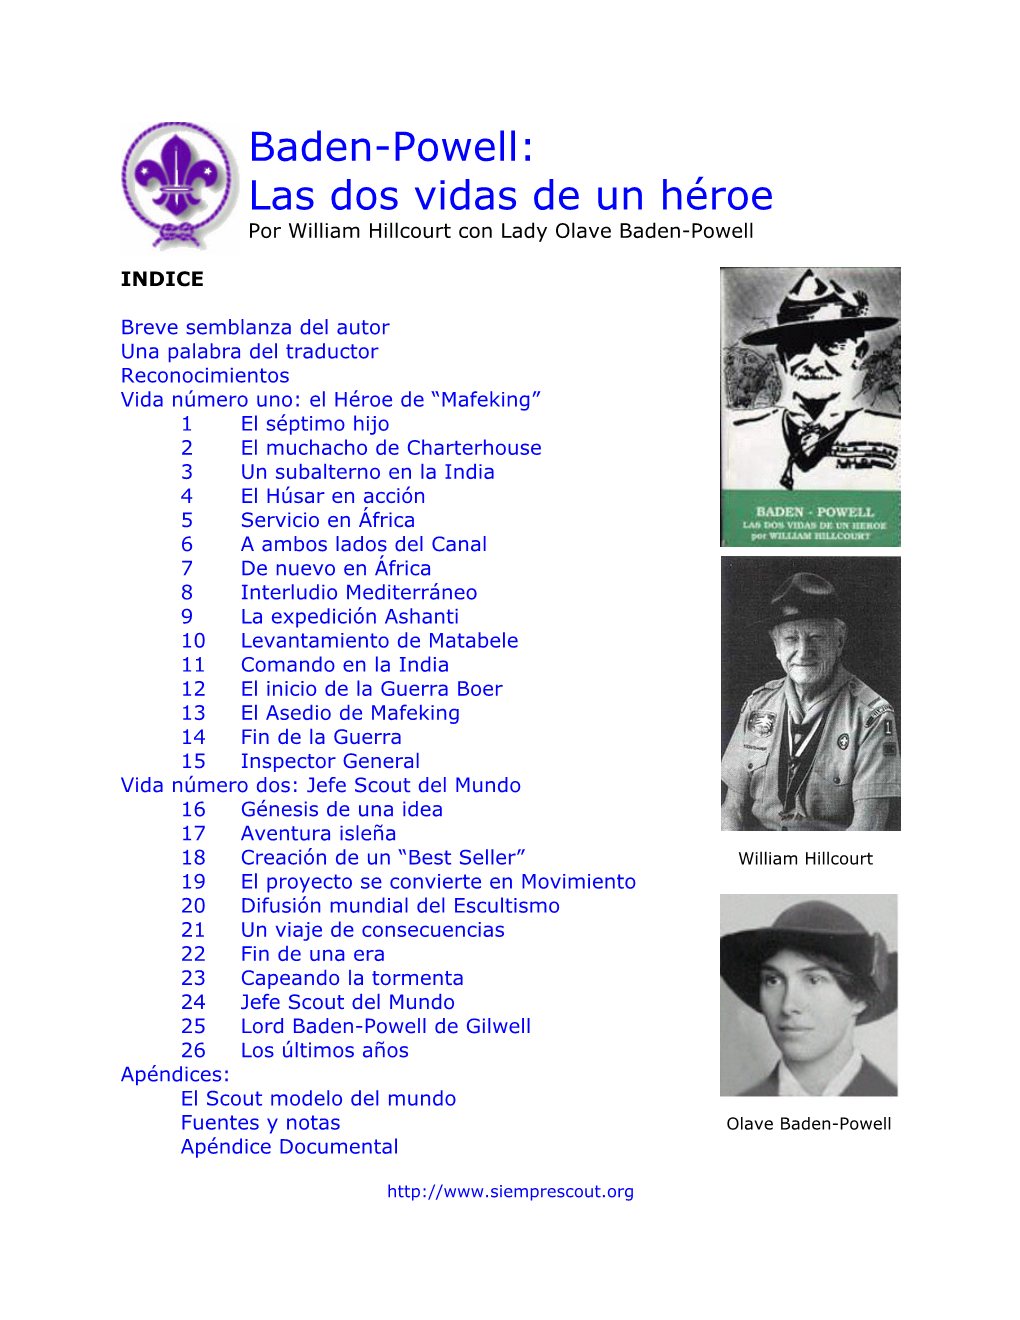 Las Dos Vidas De Un Héroe Por William Hillcourt Con Lady Olave Baden-Powell